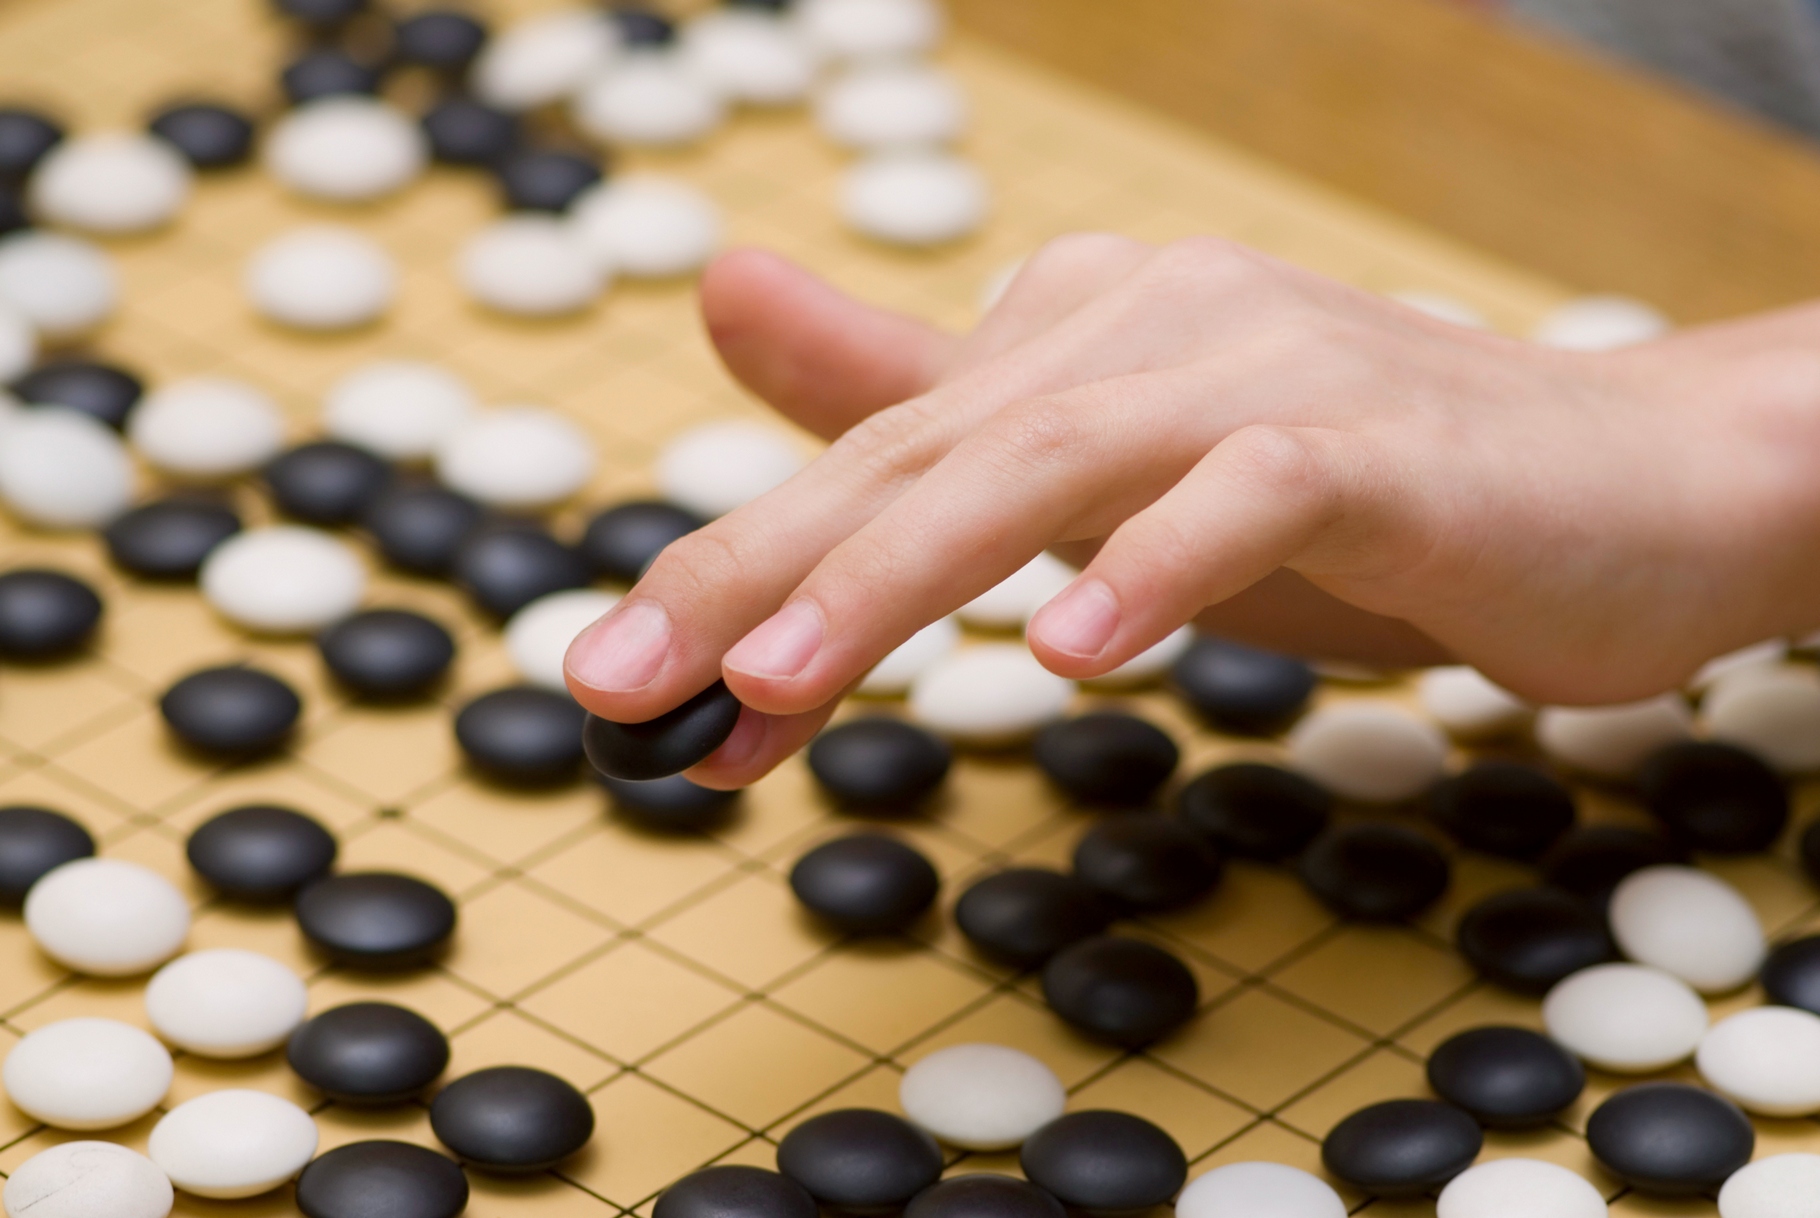 Après les trois victoires d’affilée d’AlphaGo dont le jeu semblait proche de la perfection, les observateurs commençaient à douter de la capacité de Lee Sedol à opposer une résistance. Sa victoire est un formidable démenti. © Bork, Shutterstock